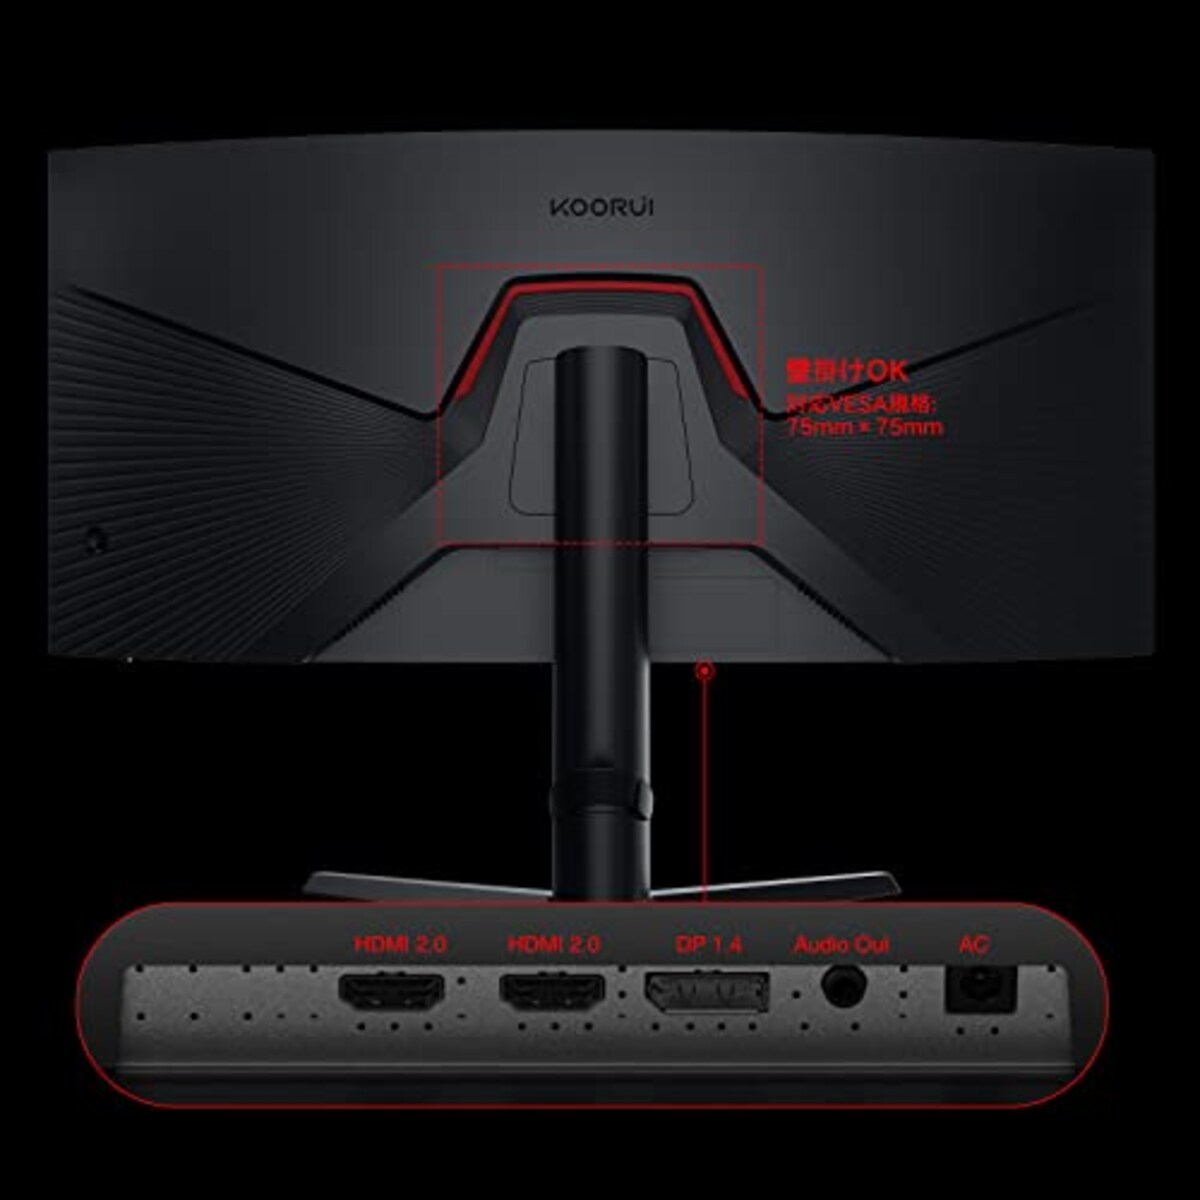  KOORUI 34インチ ゲーミング モニター 21:9 ウルトラワイド 165Hz 1ms 湾曲 曲面モニター ディスプレイ HDR HDMI×2,DisplayPort×1画像7 